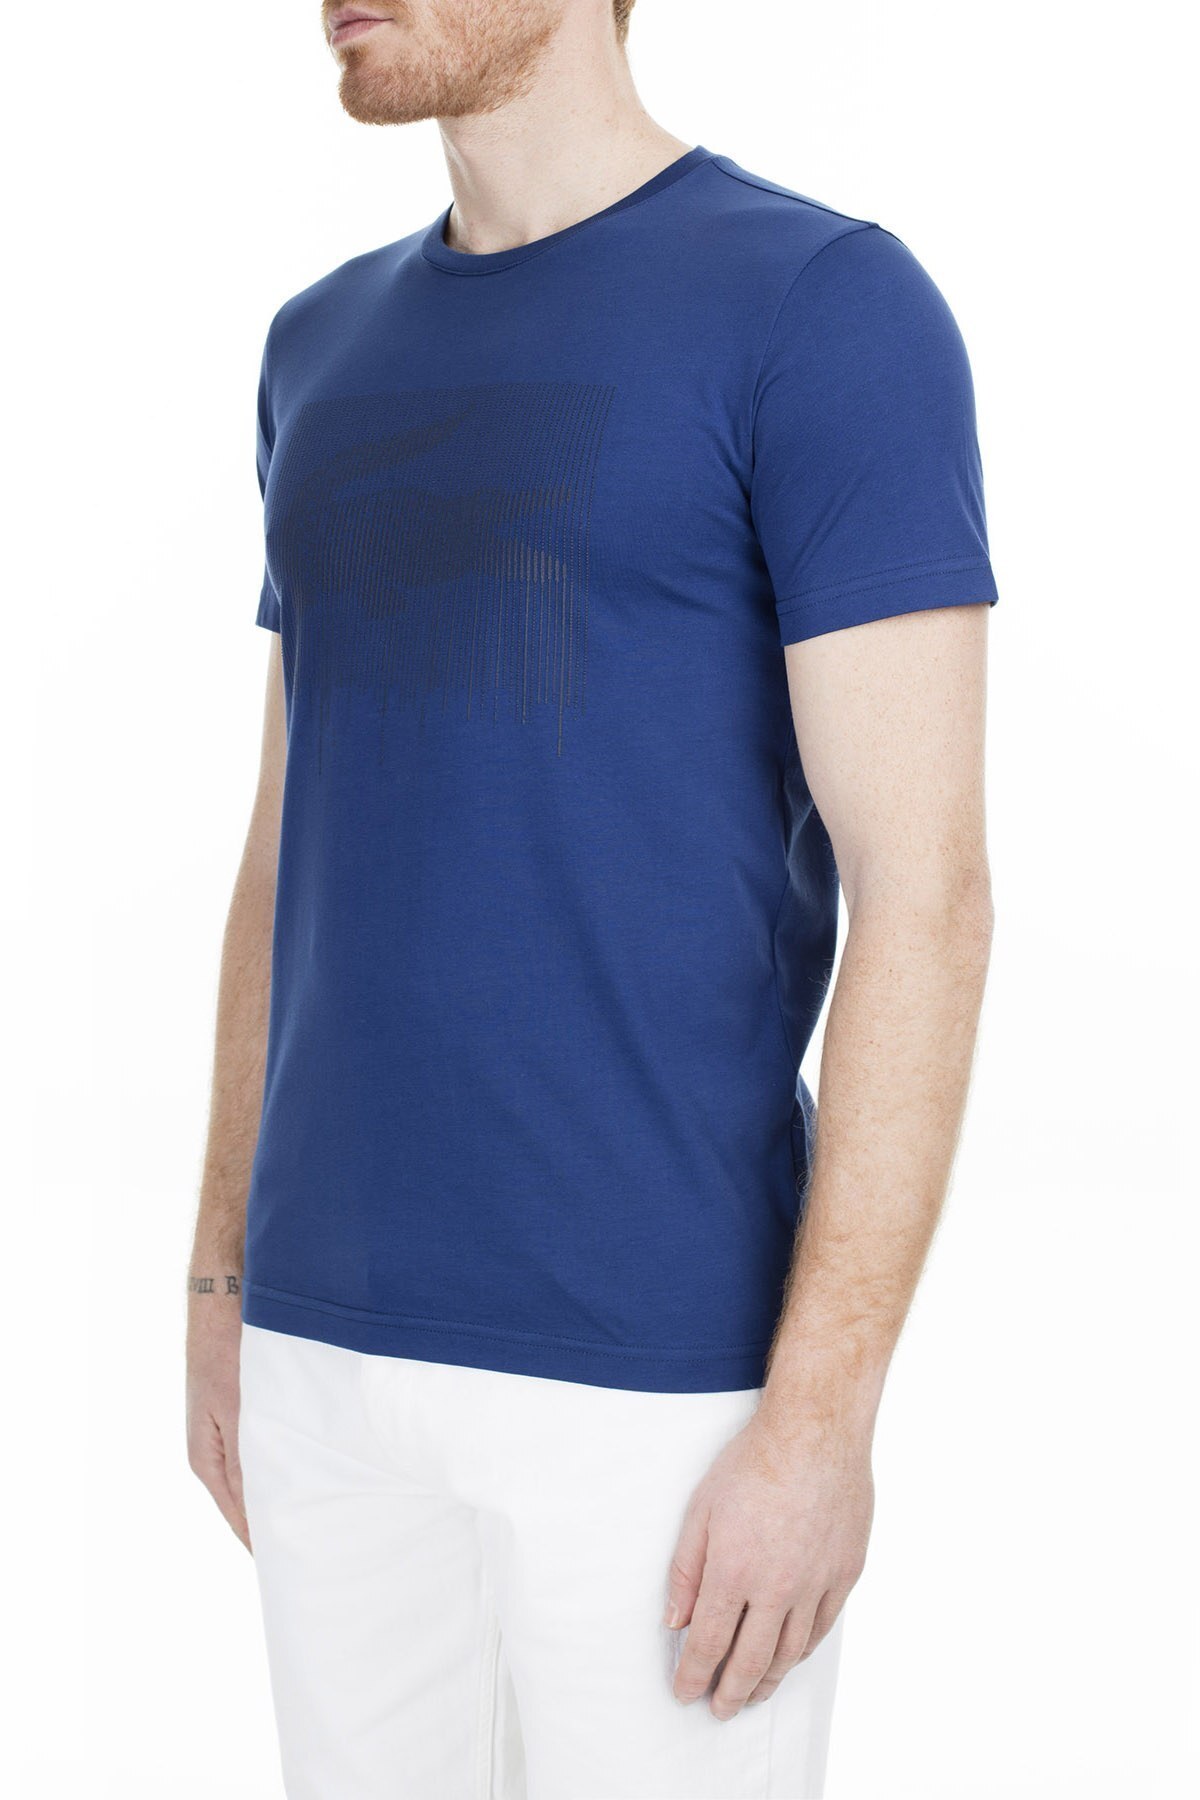 Lacoste Slim Fit Erkek T Shirt TH0013 13M SAKS-MAVİ